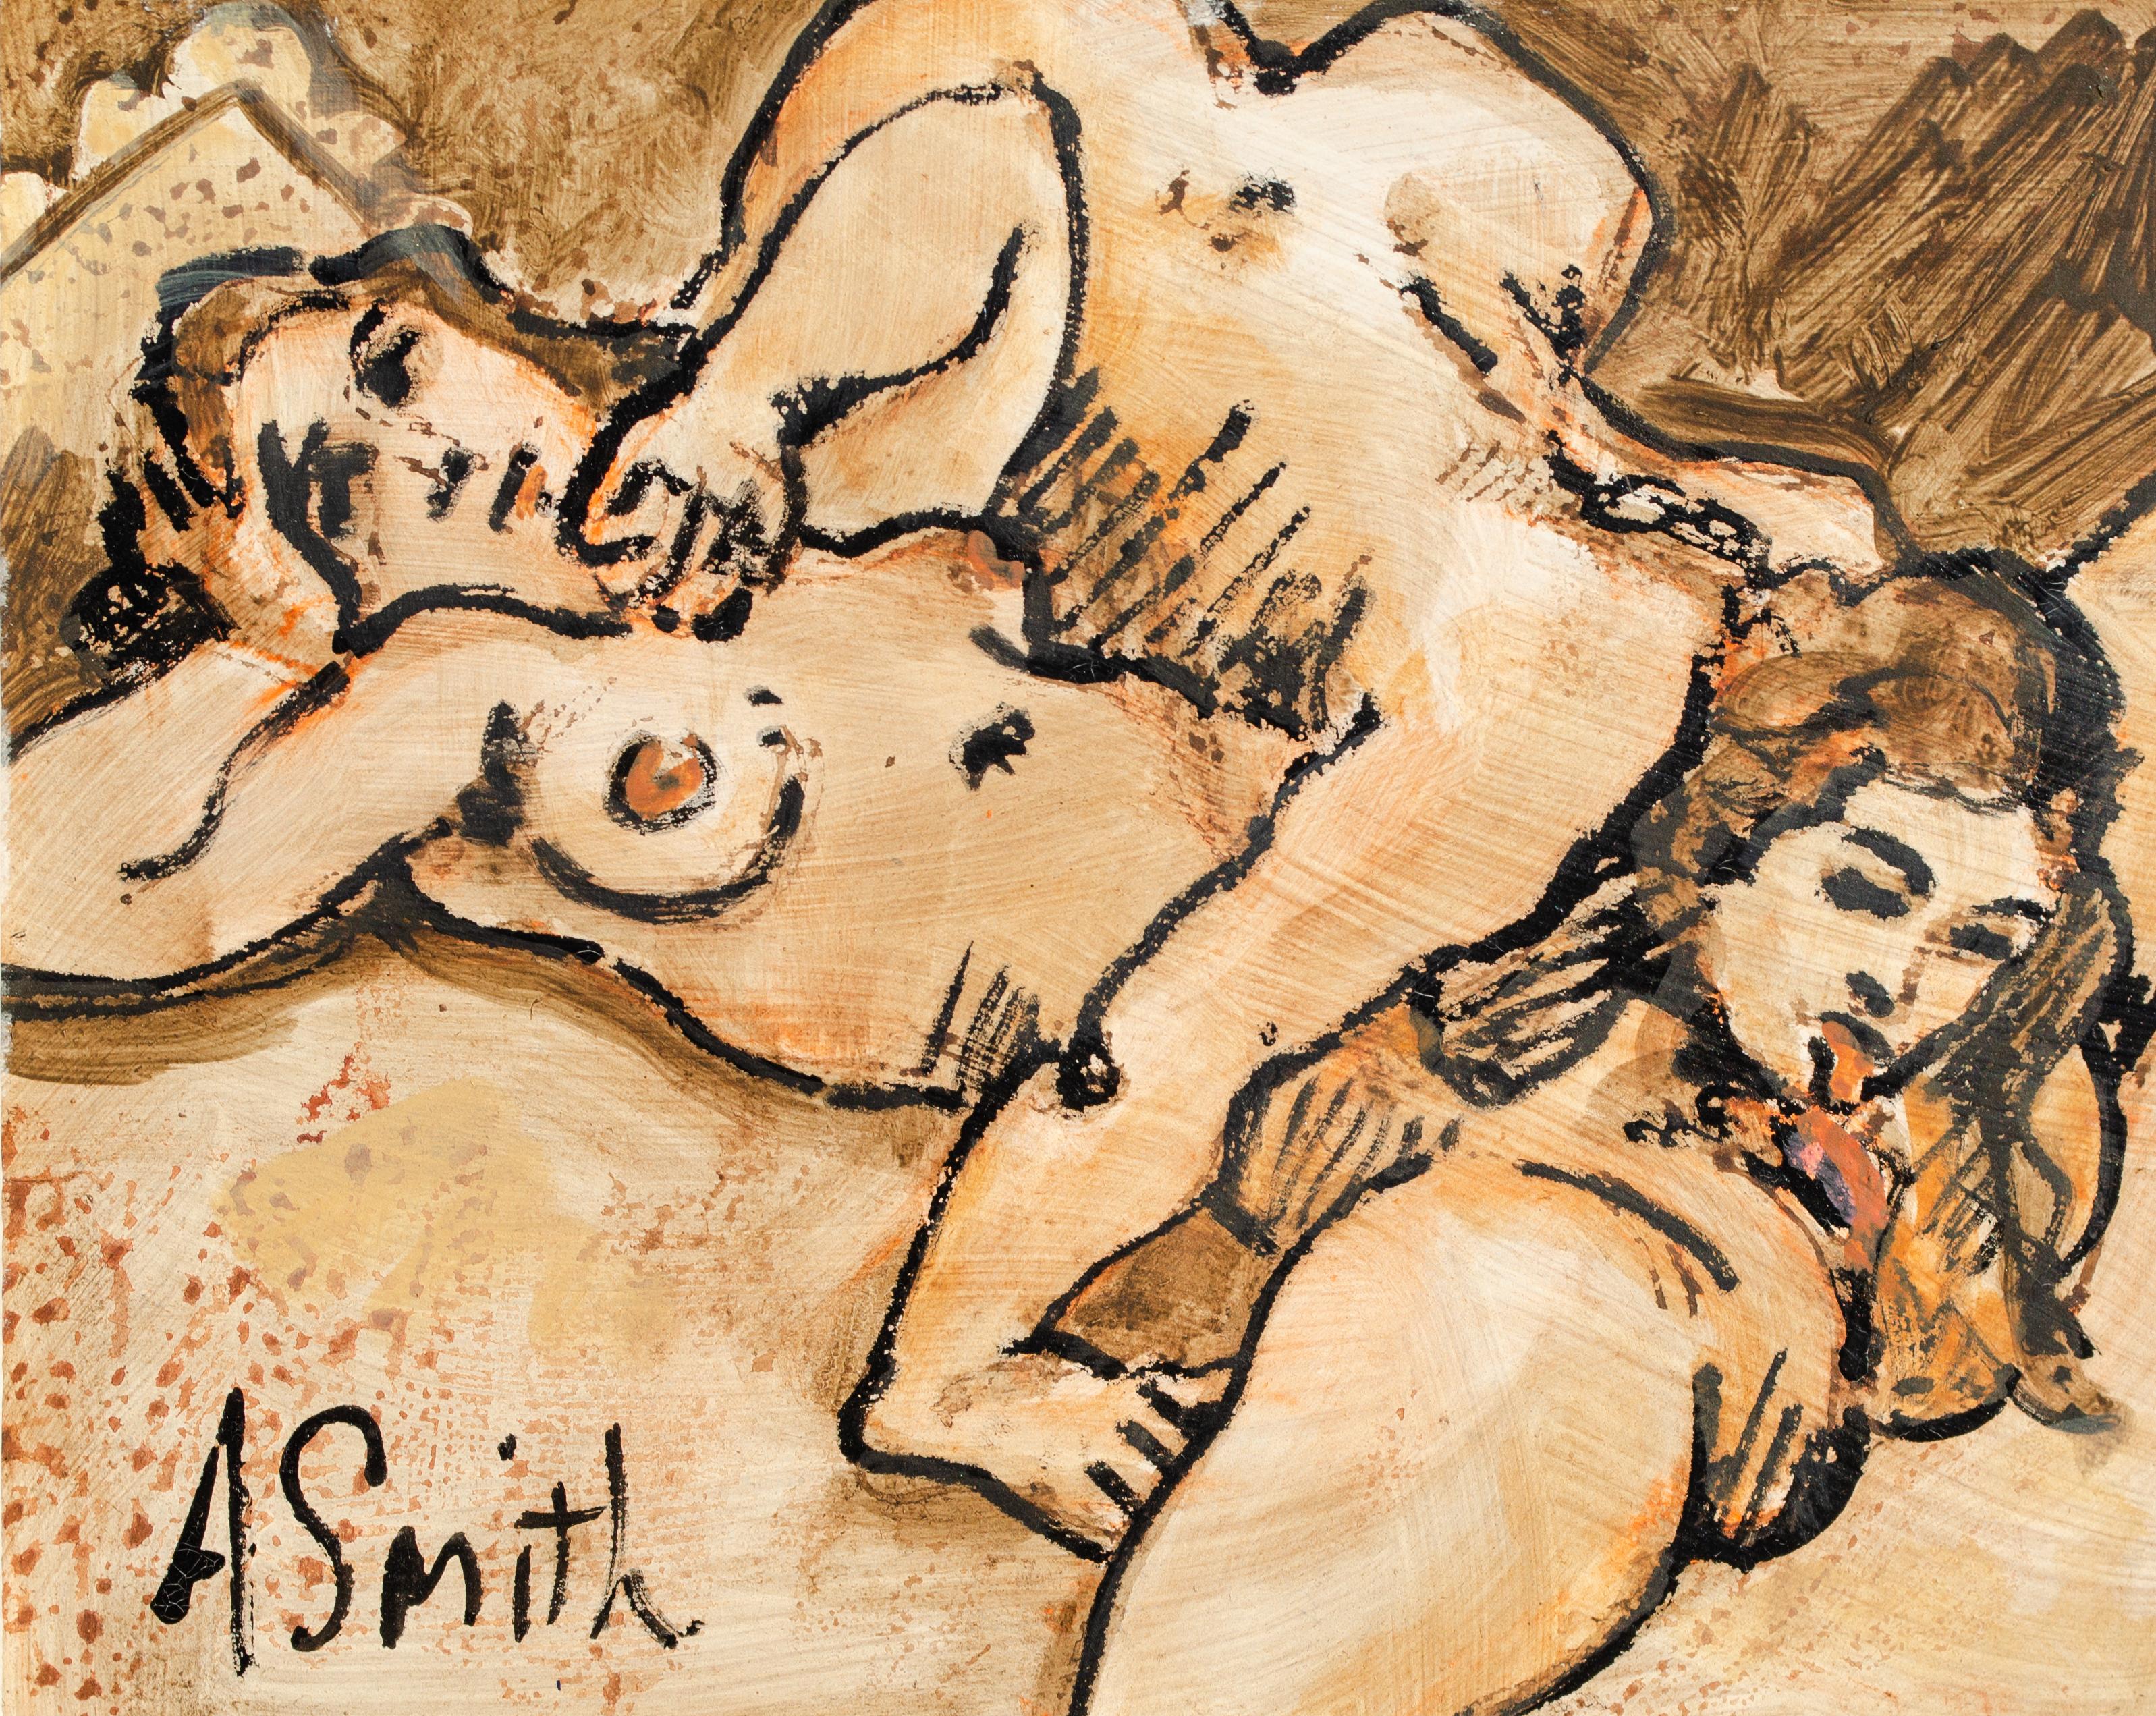 Arthur Smith (américain, 1897-1972)
Sans titre, 20e siècle
Huile sur carton
8 x 9 7/8 in. 
Encadré : 14 1/4 x 16 3/8 in. 
Signé en bas à gauche : A Smith

Arthur Smith est un peintre américain répertorié, surtout connu pour ses peintures de scènes